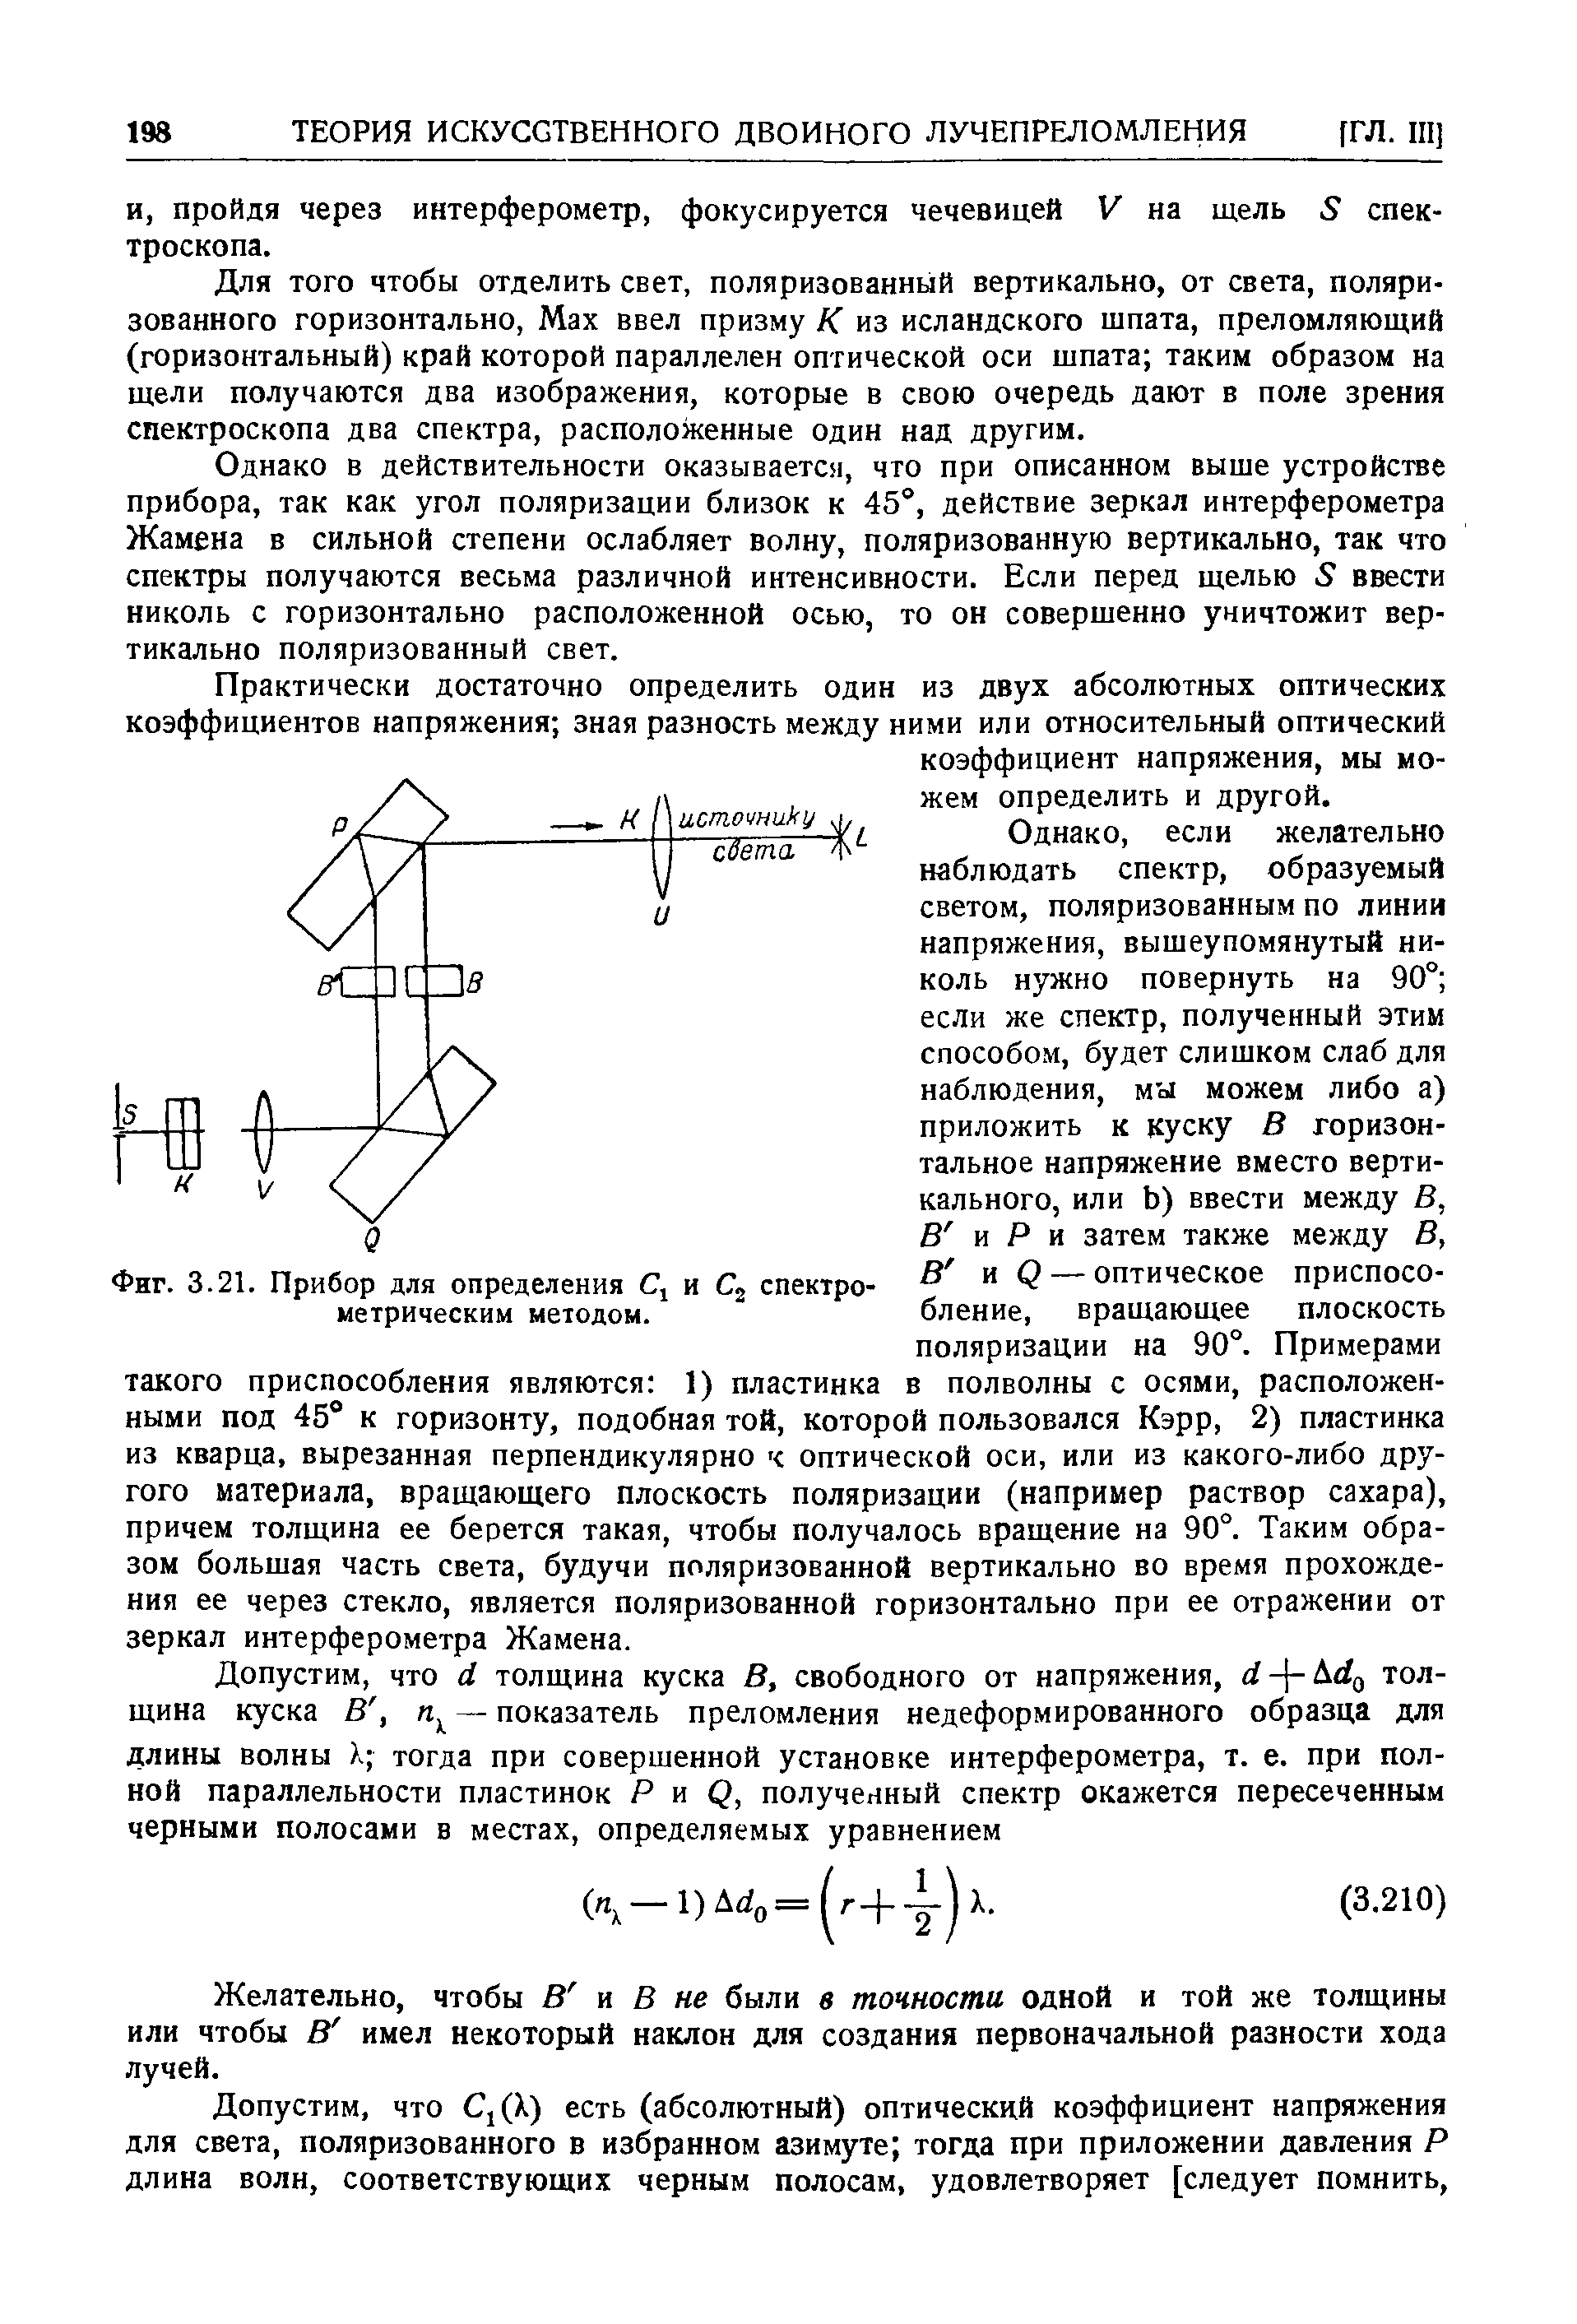 Фиг. 3.21. Прибор для определения j и спектрометрическим методом.
